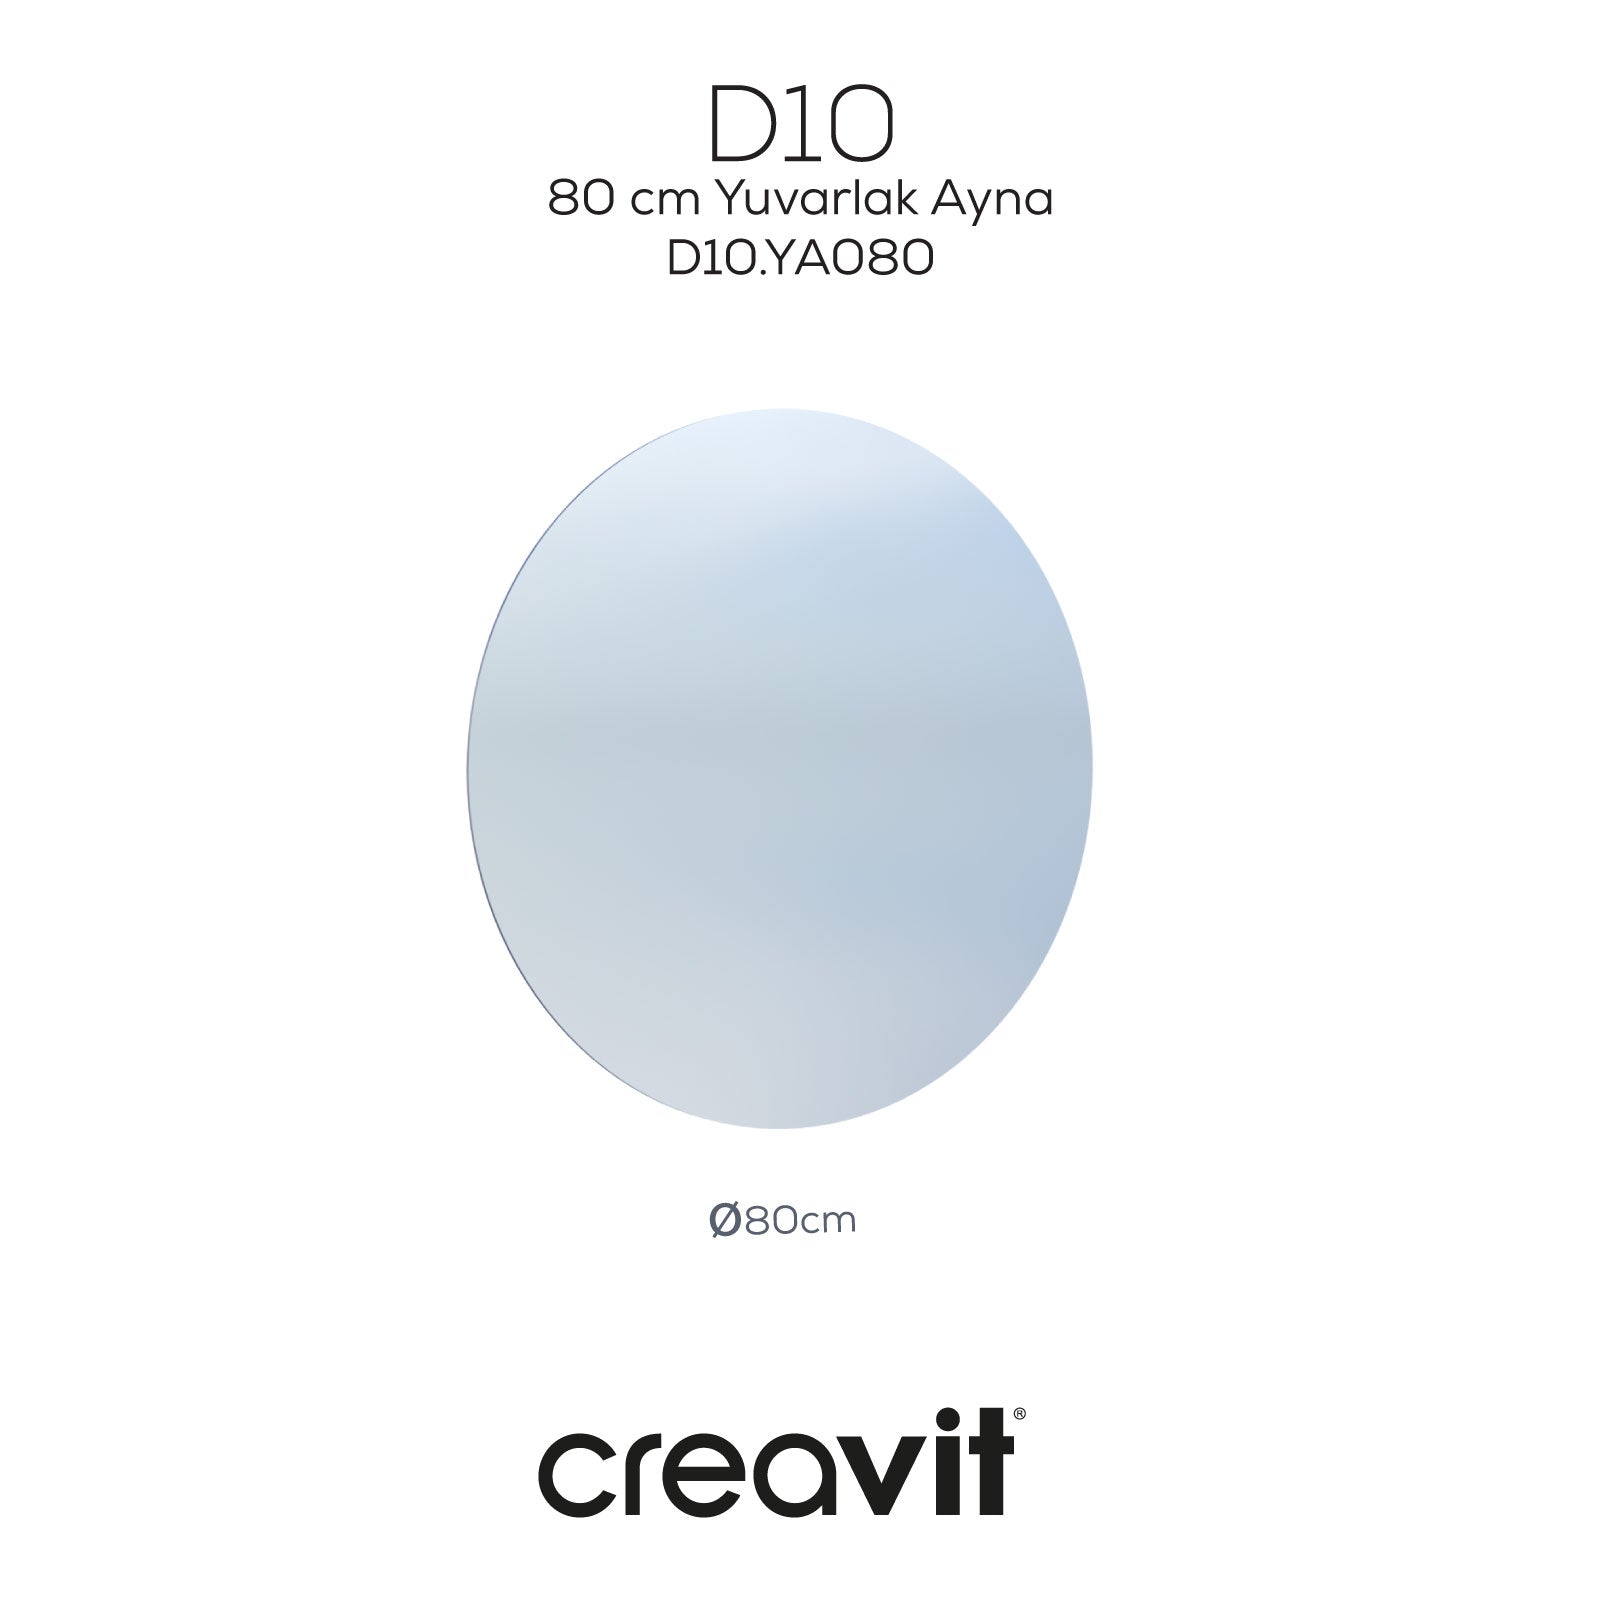 D10 80 cm Yuvarlak Ayna - Creavit | Banyo Bu Tarafta